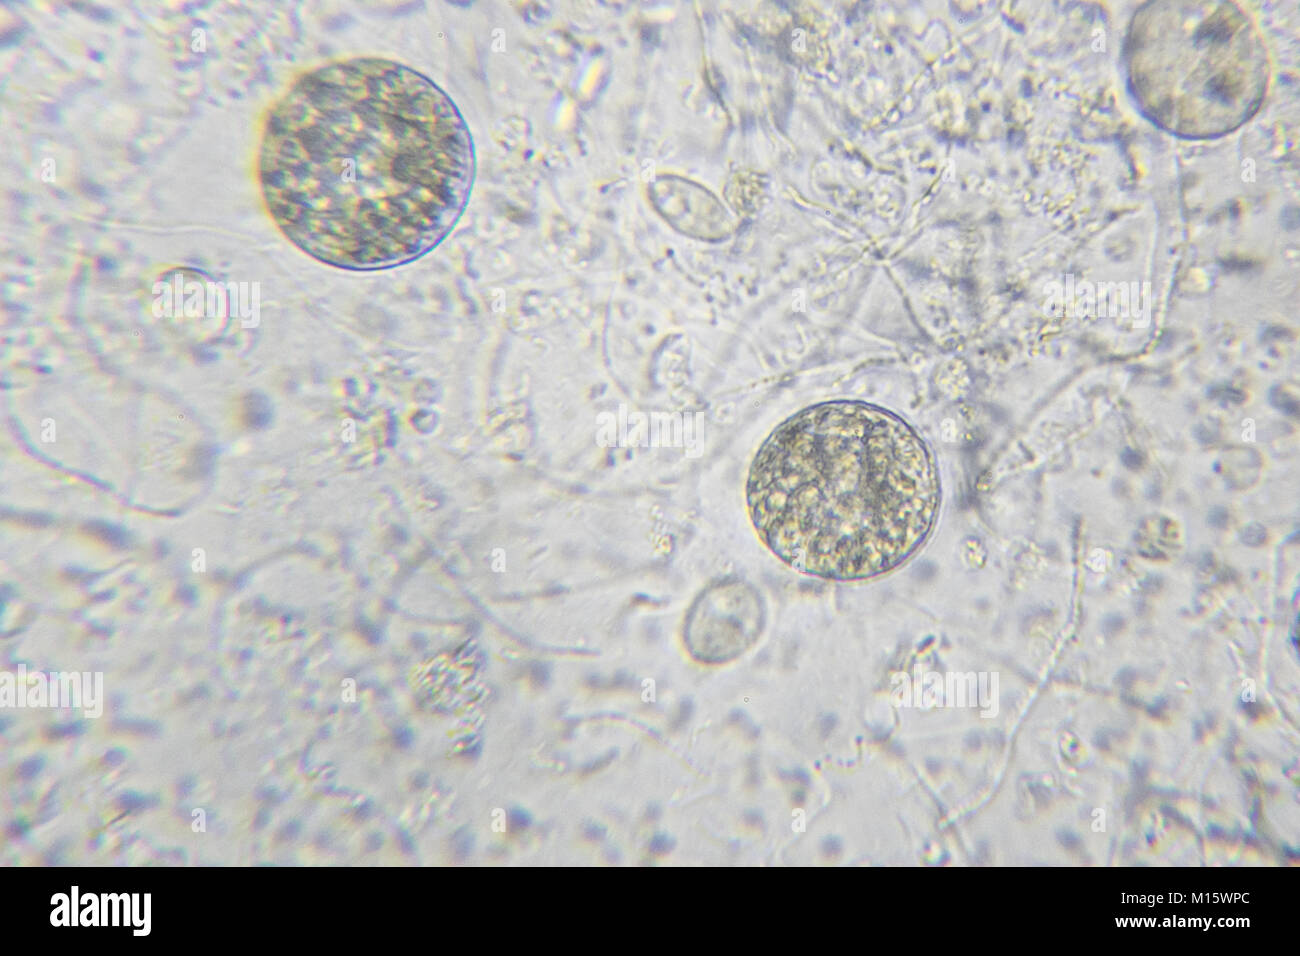 Algues Chlamydomonas, paramécie ciliés et de nombreuses bactéries par microscope Banque D'Images